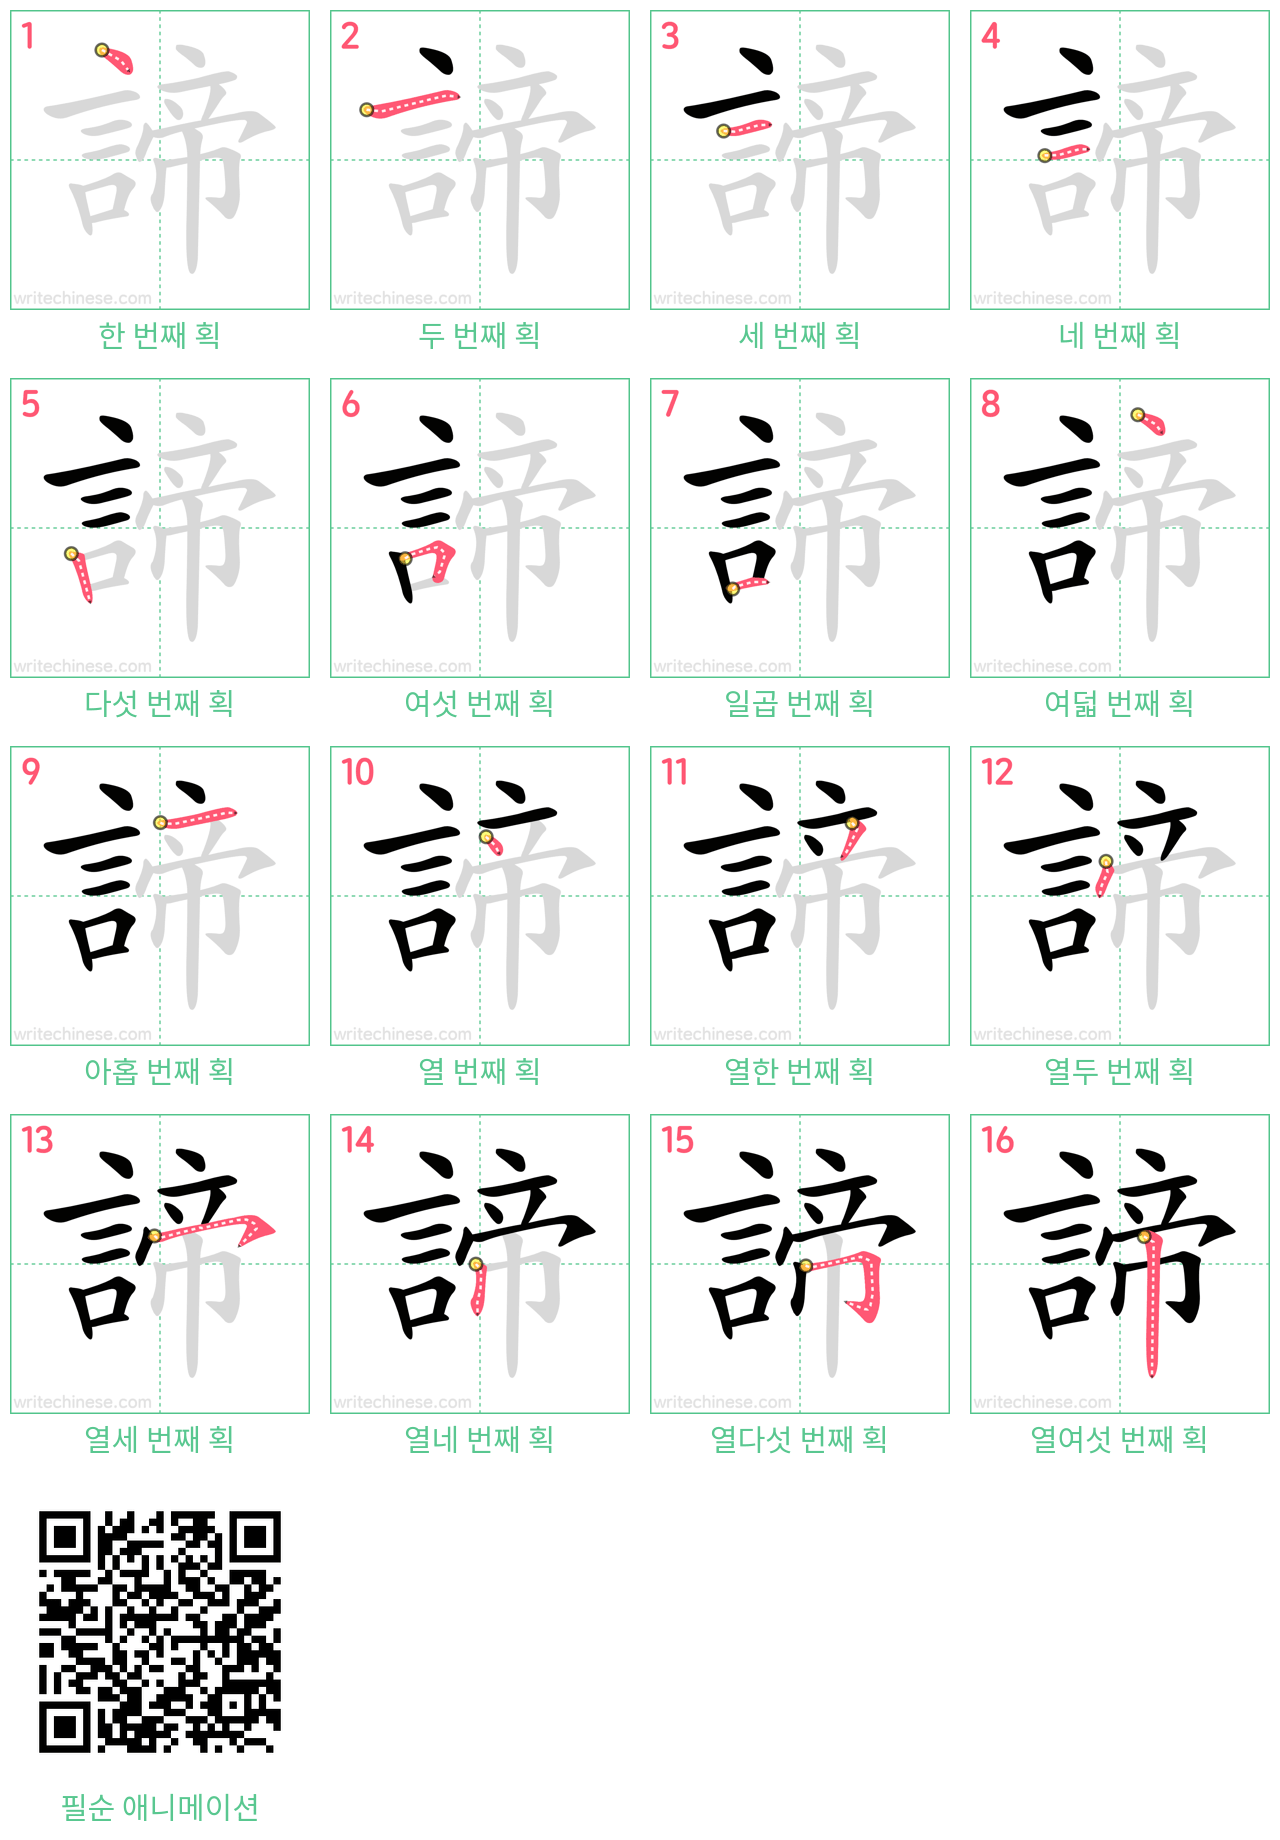 諦 step-by-step stroke order diagrams